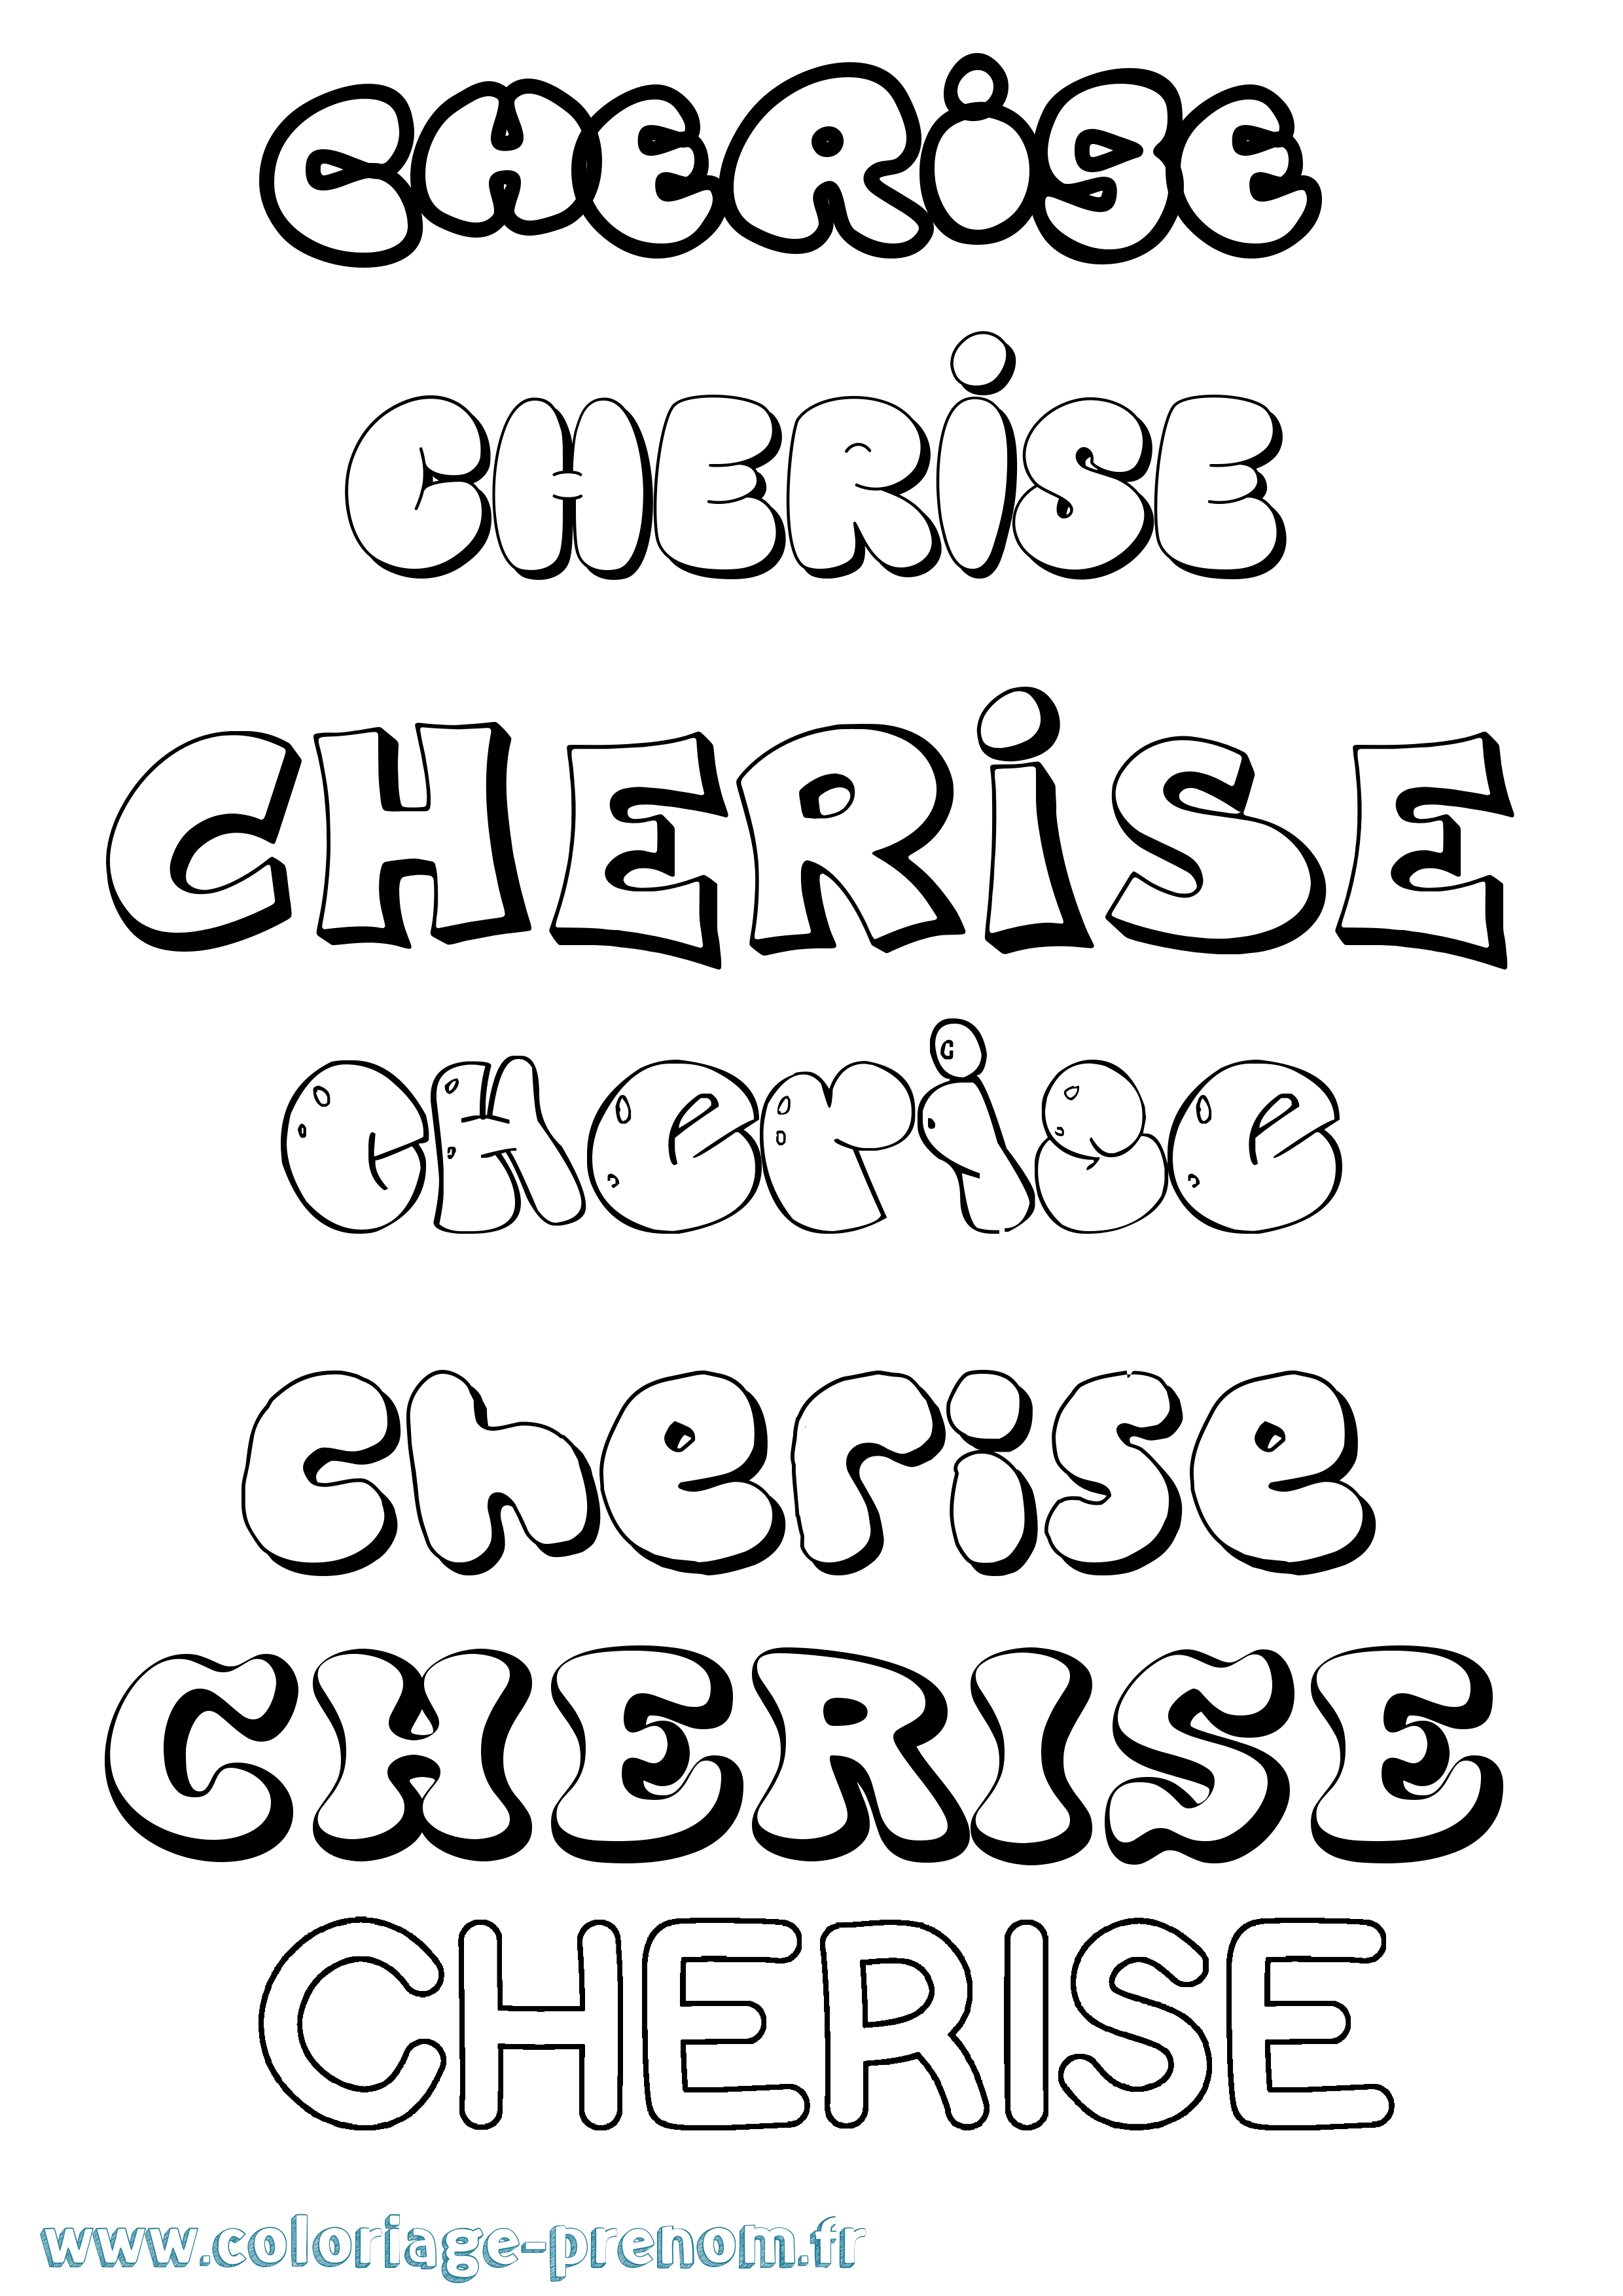 Coloriage prénom Cherise Bubble